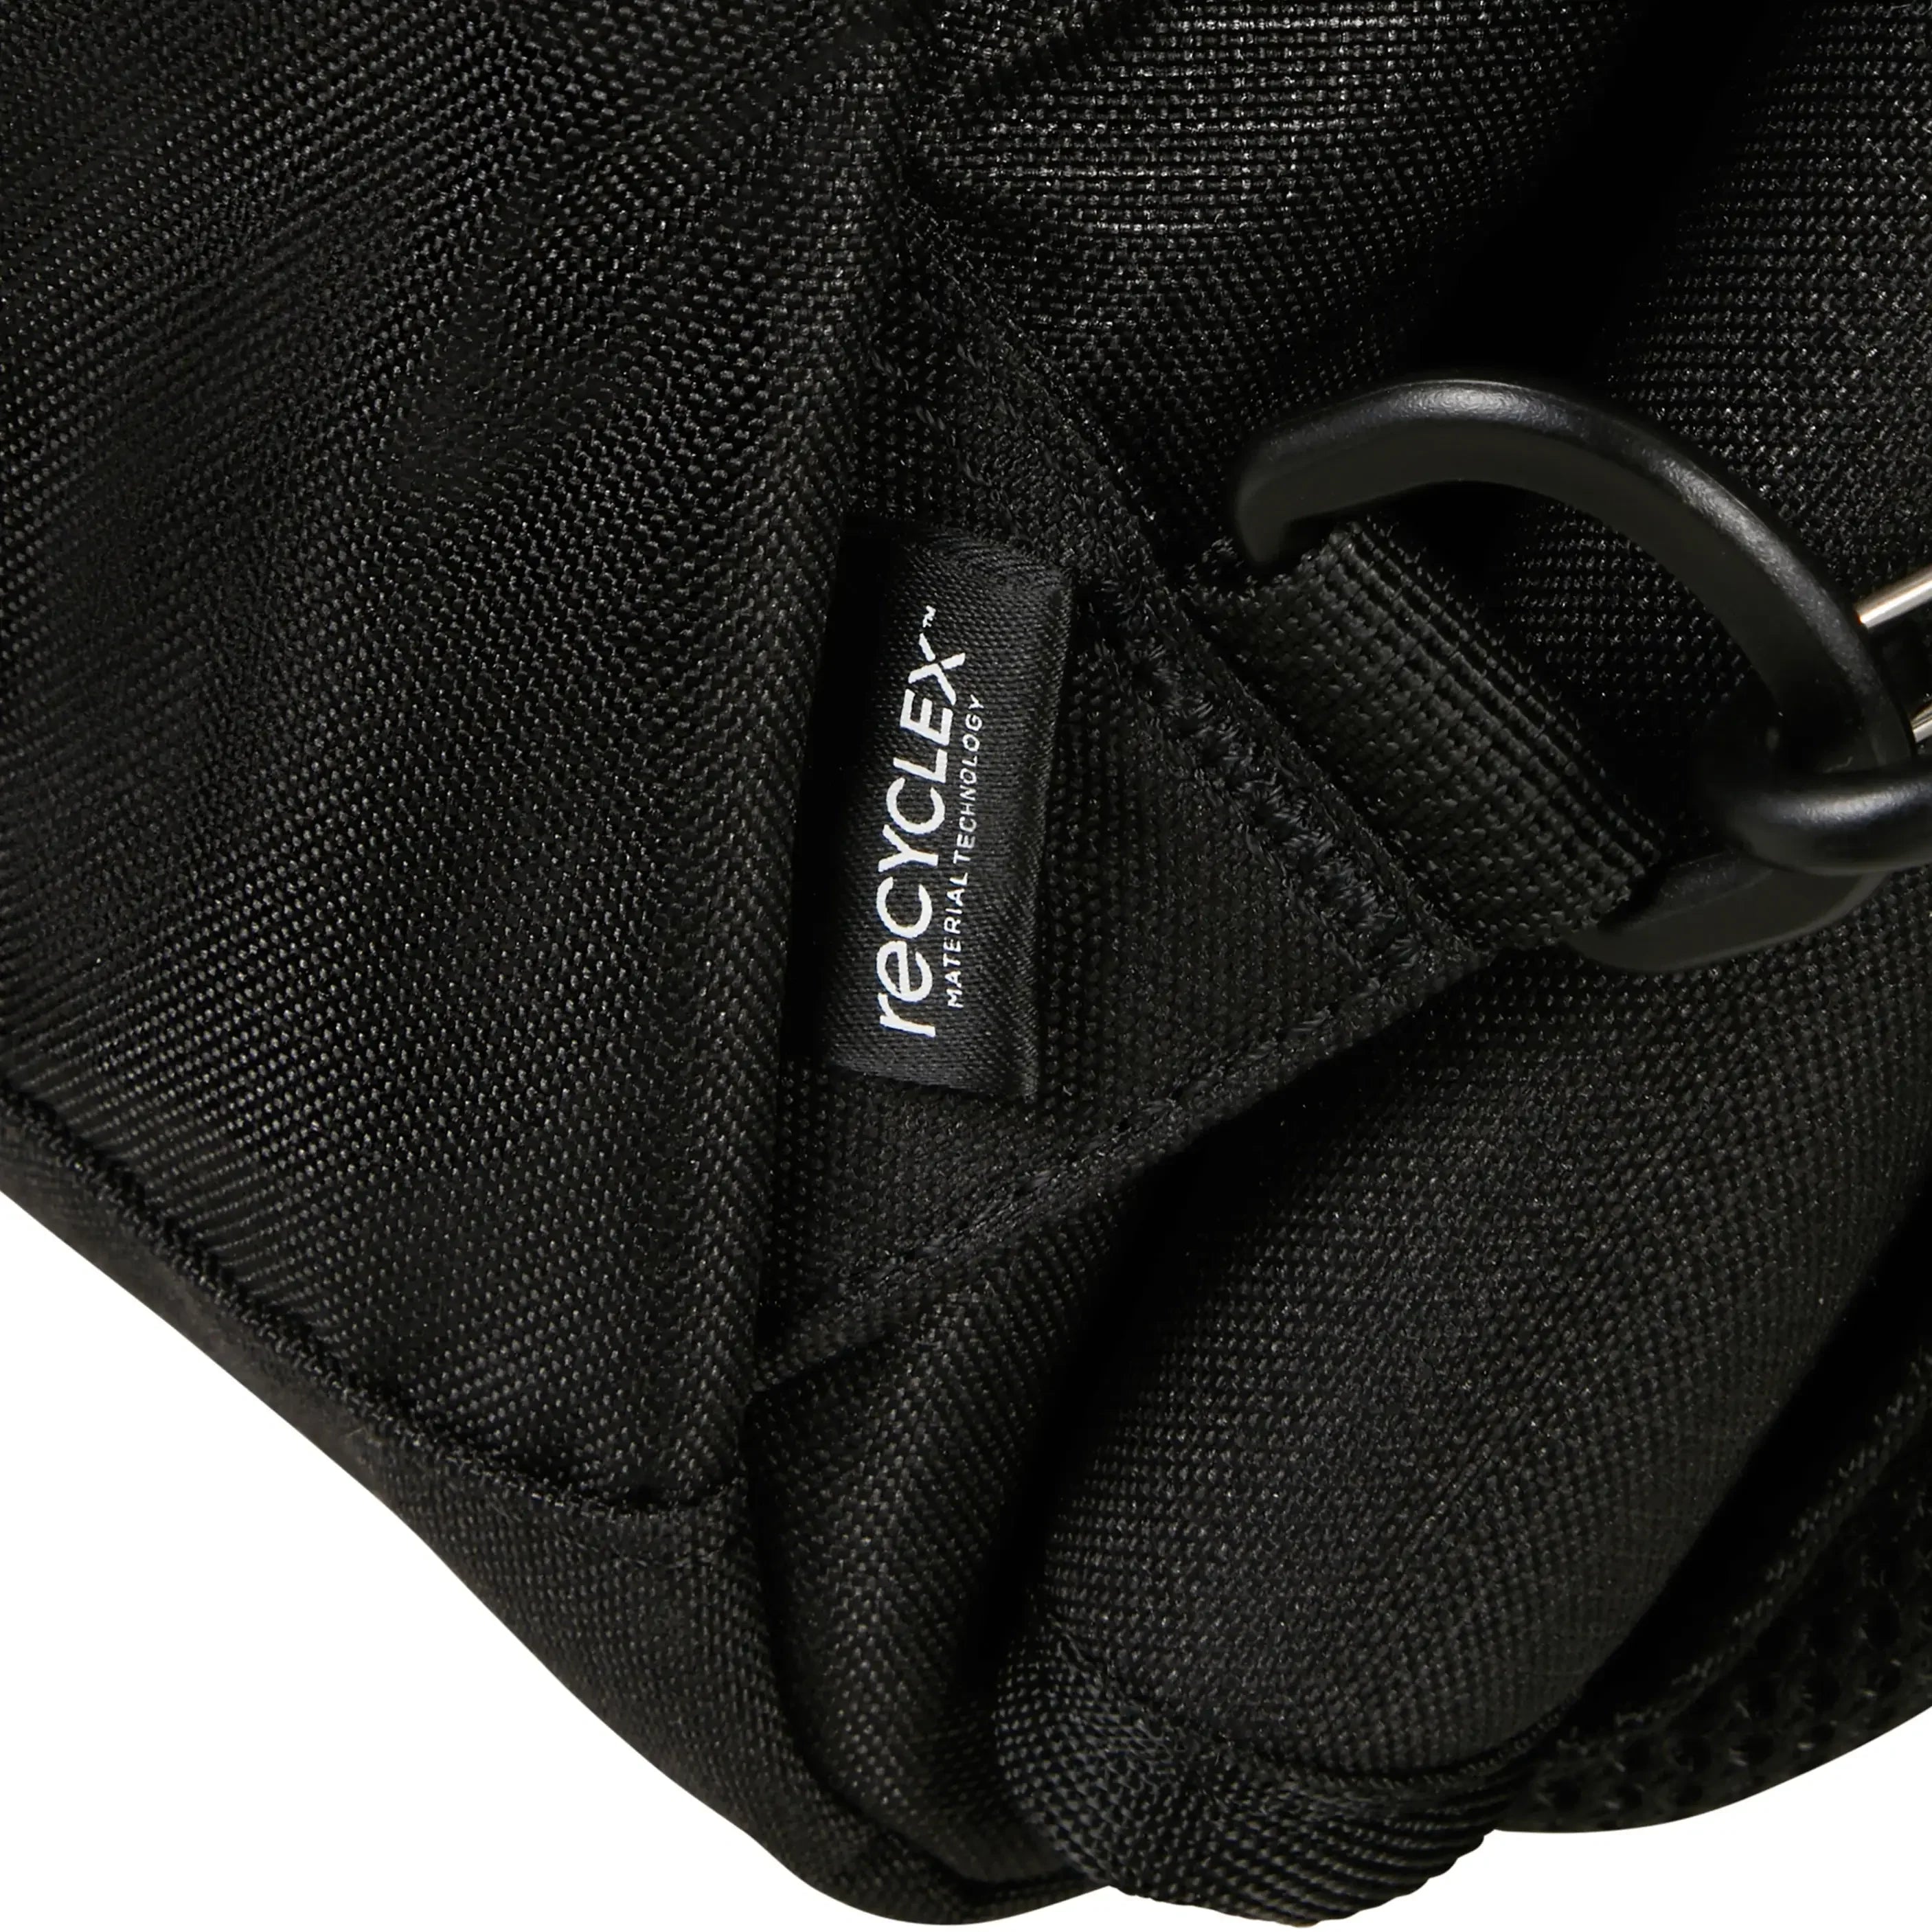 Samsonite Roader Travel Backpack M 61 cm - drifter grey